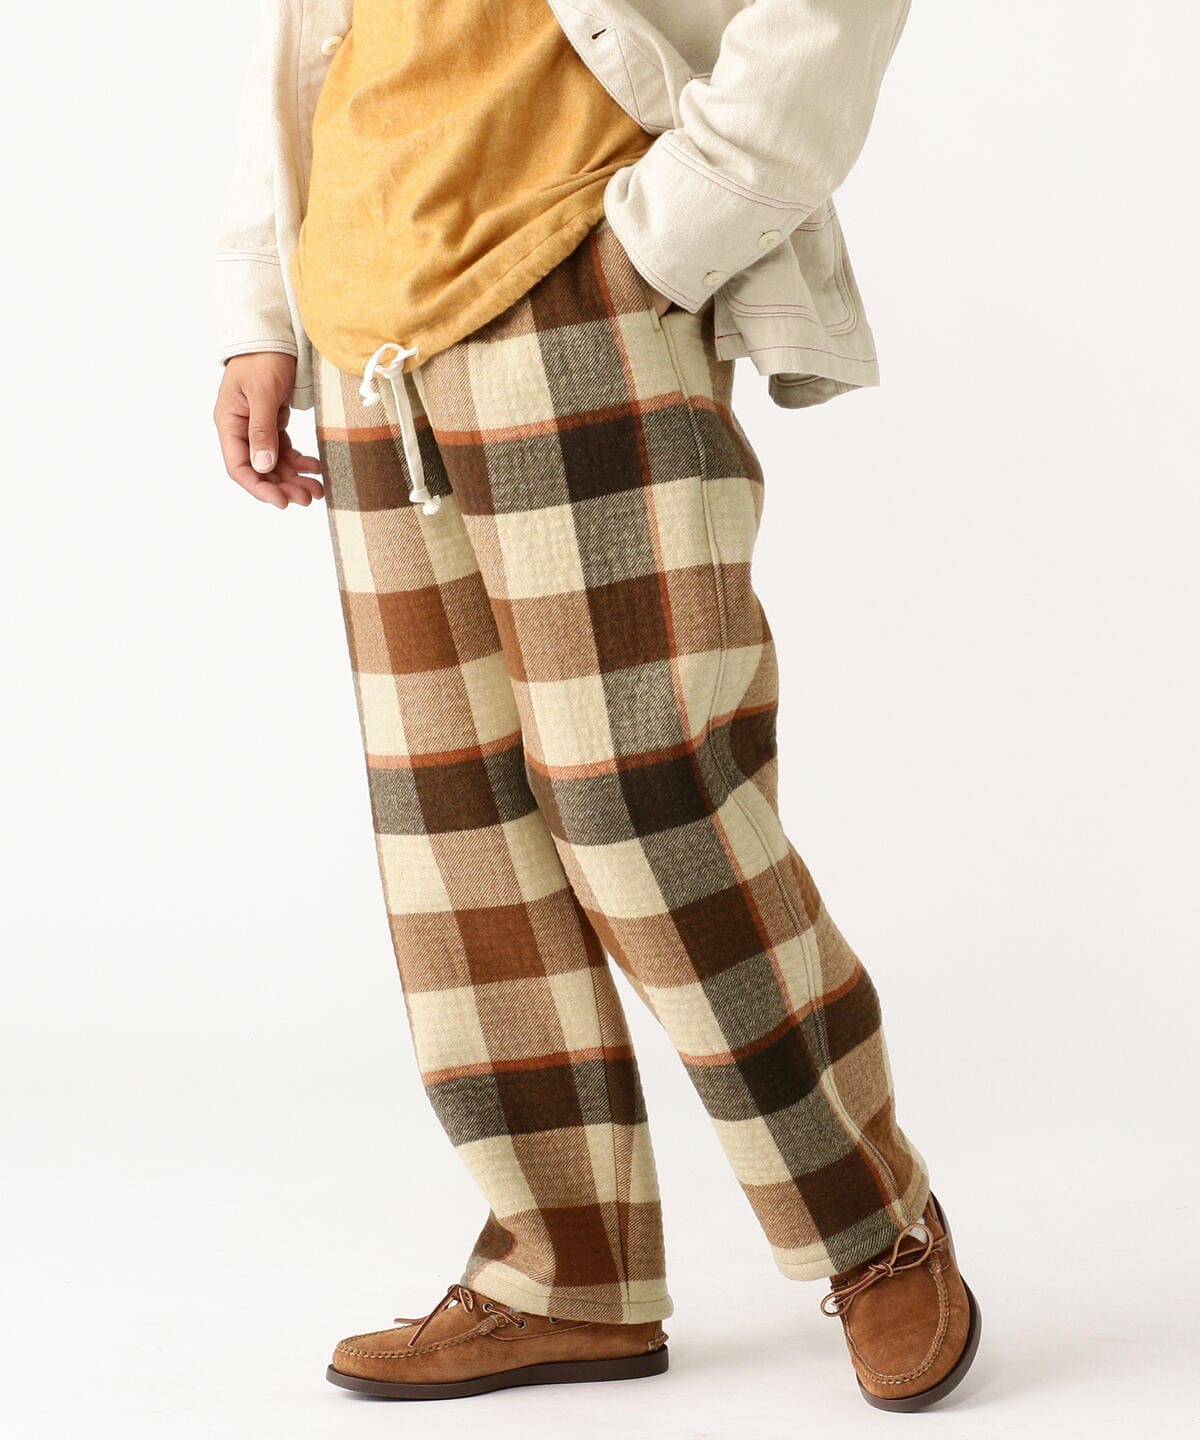 oll  pajamas slacks  brown